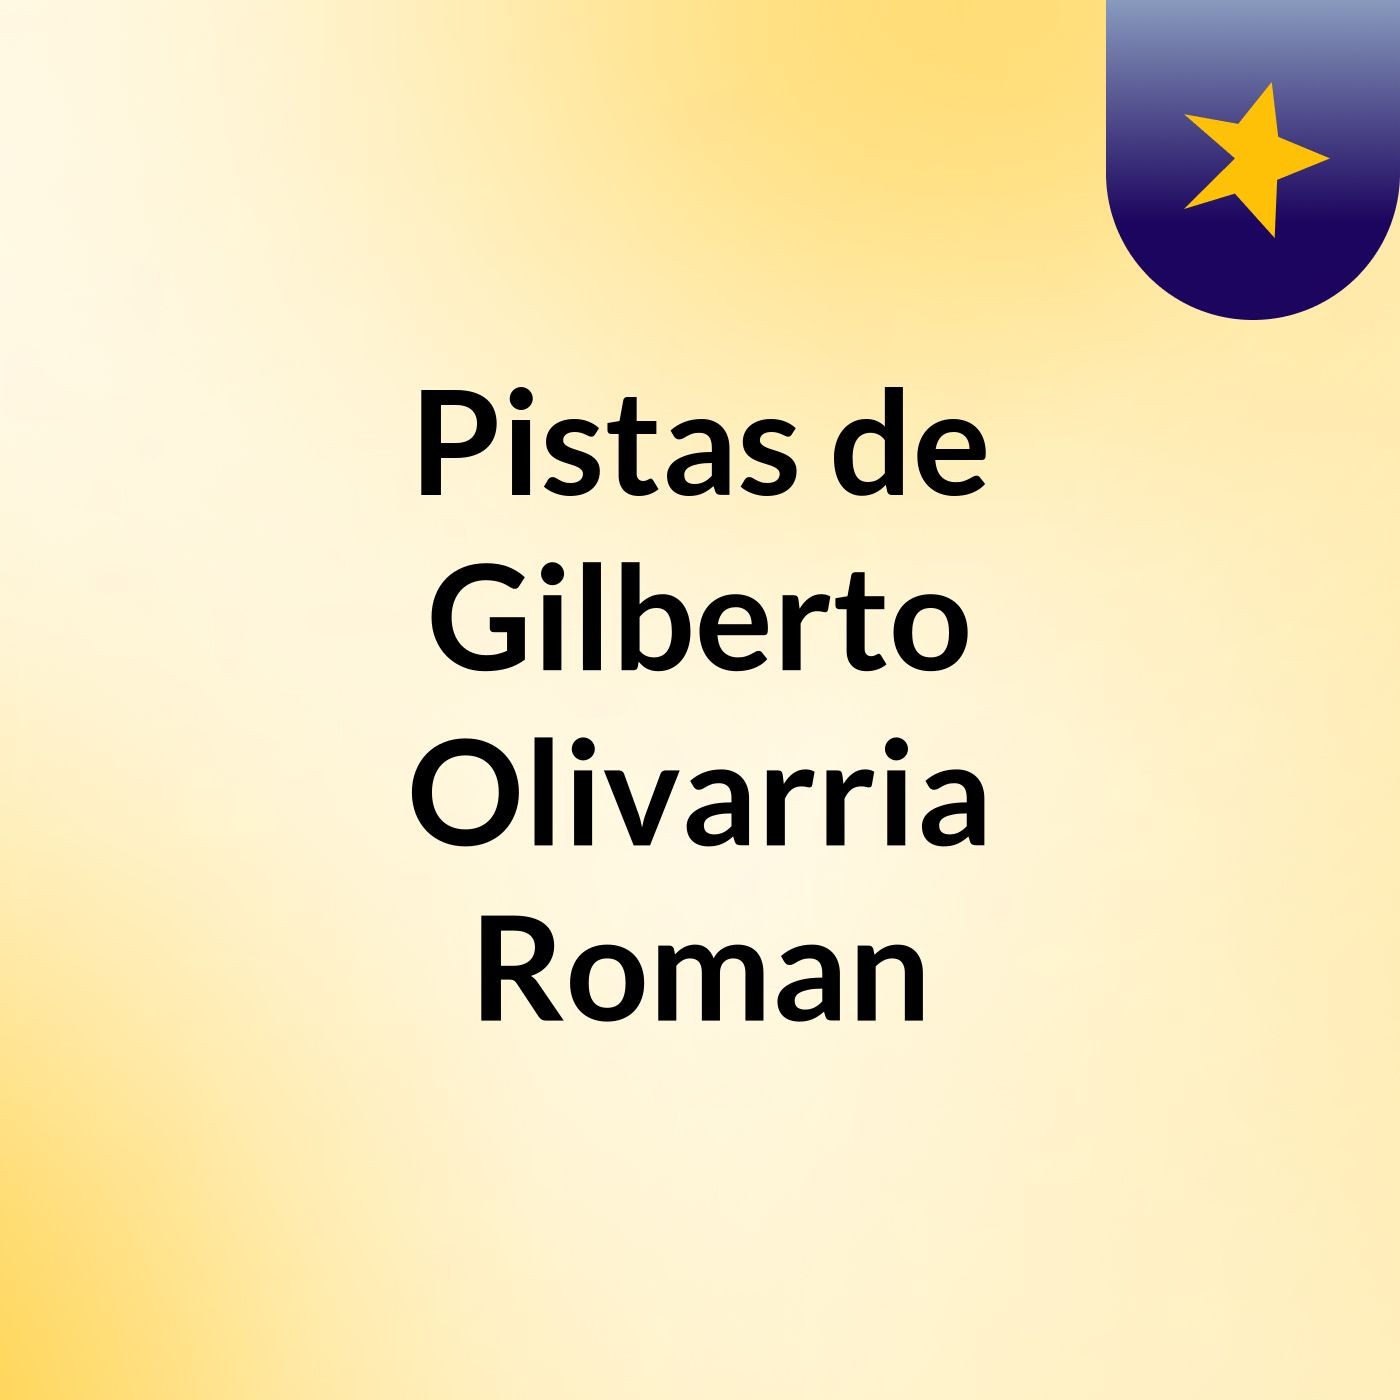 Pistas de Gilberto Olivarria Roman